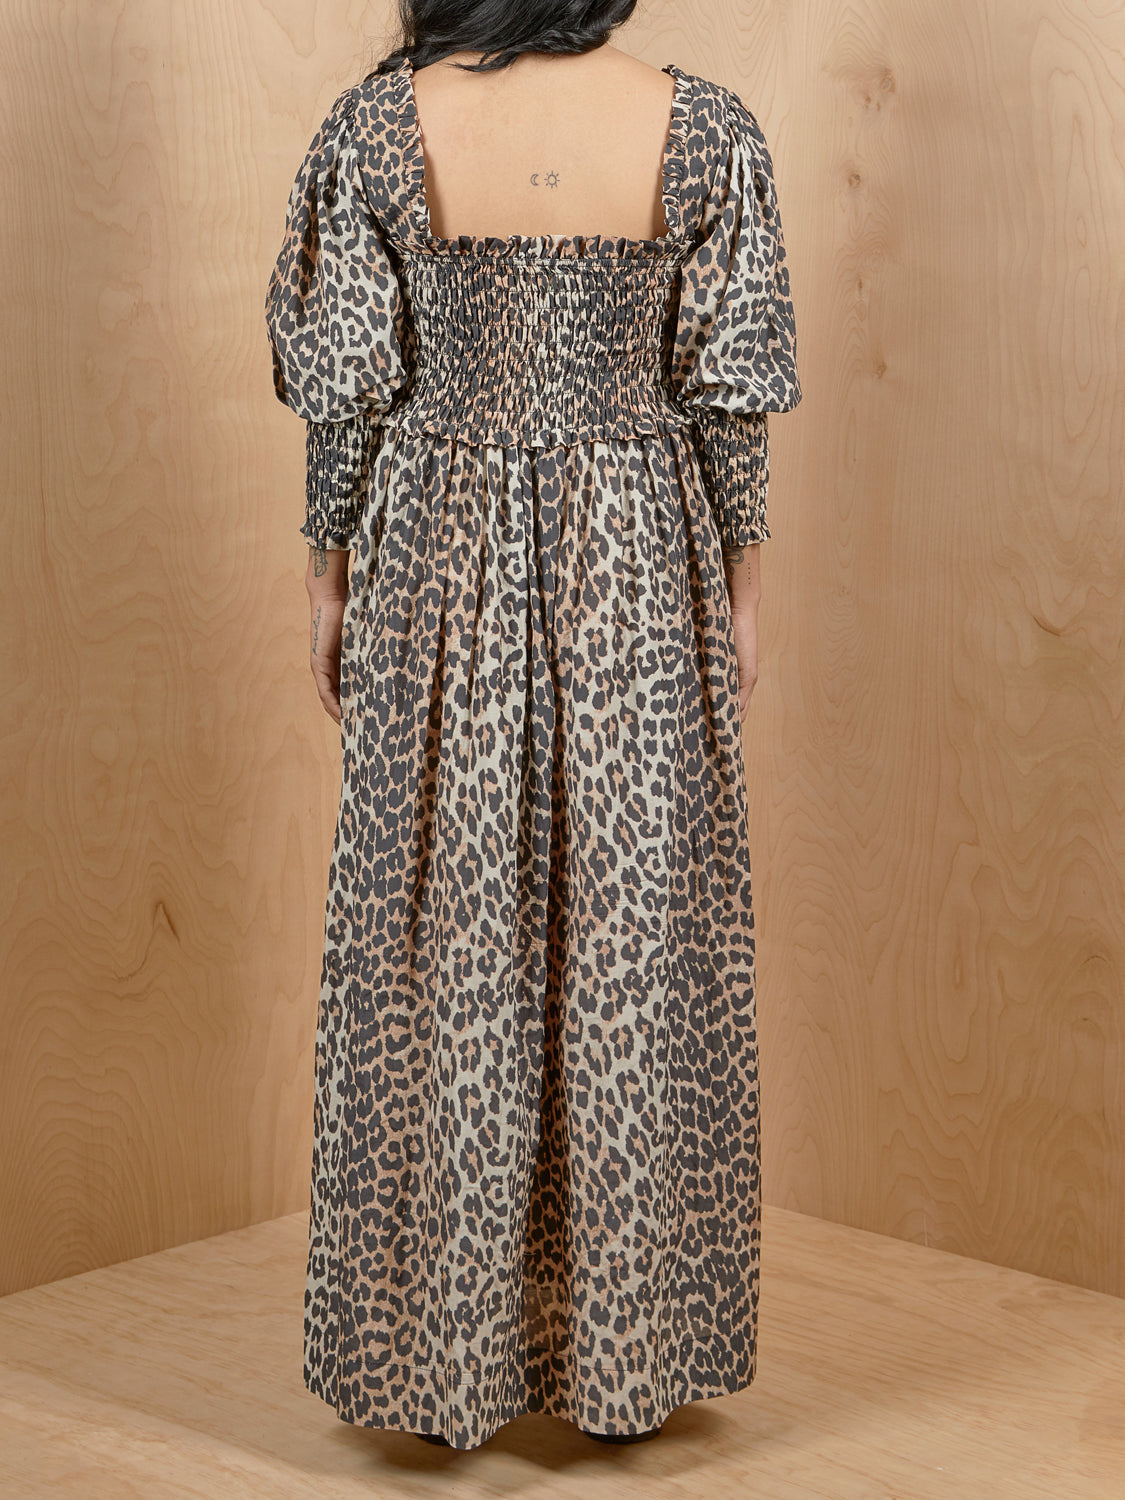 GANNI Leopard Smocked Dress